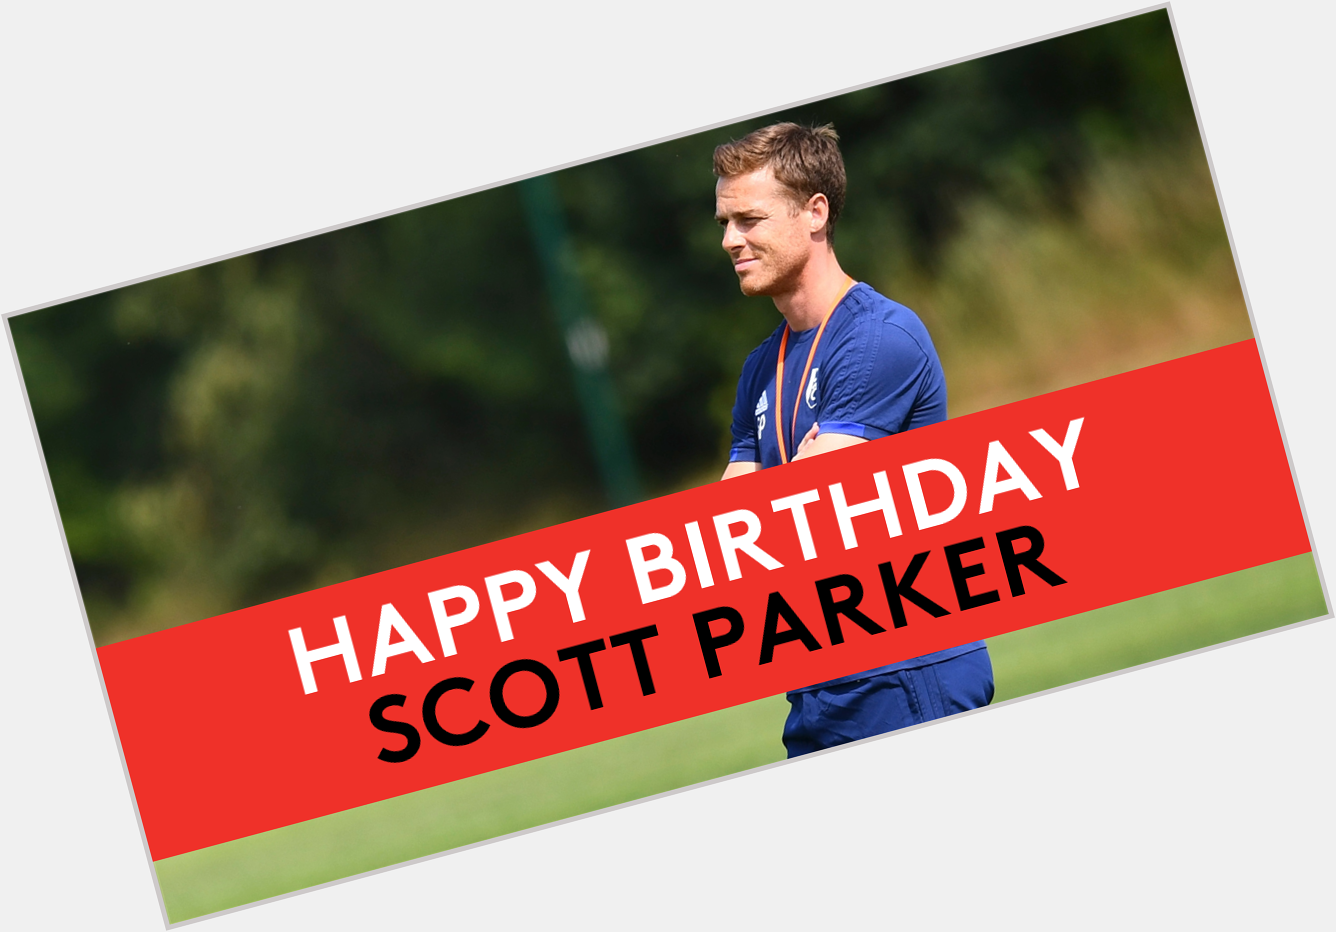 Happy birthday, Scott Parker! 